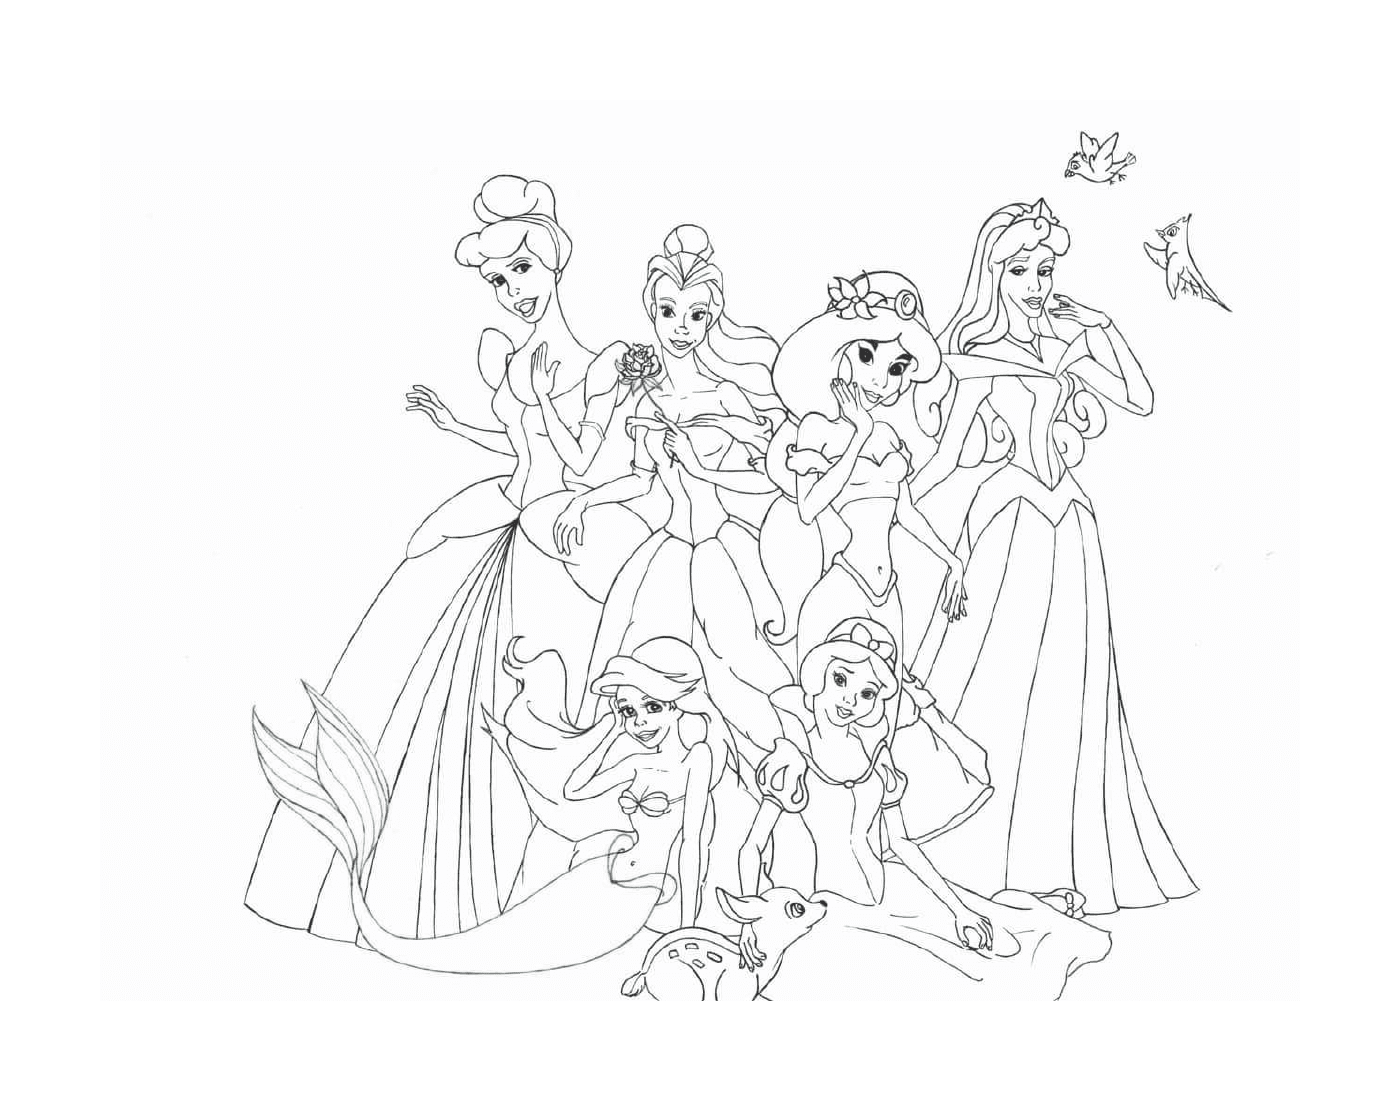  Un grupo de princesas de Disney sentadas y de pie juntas 